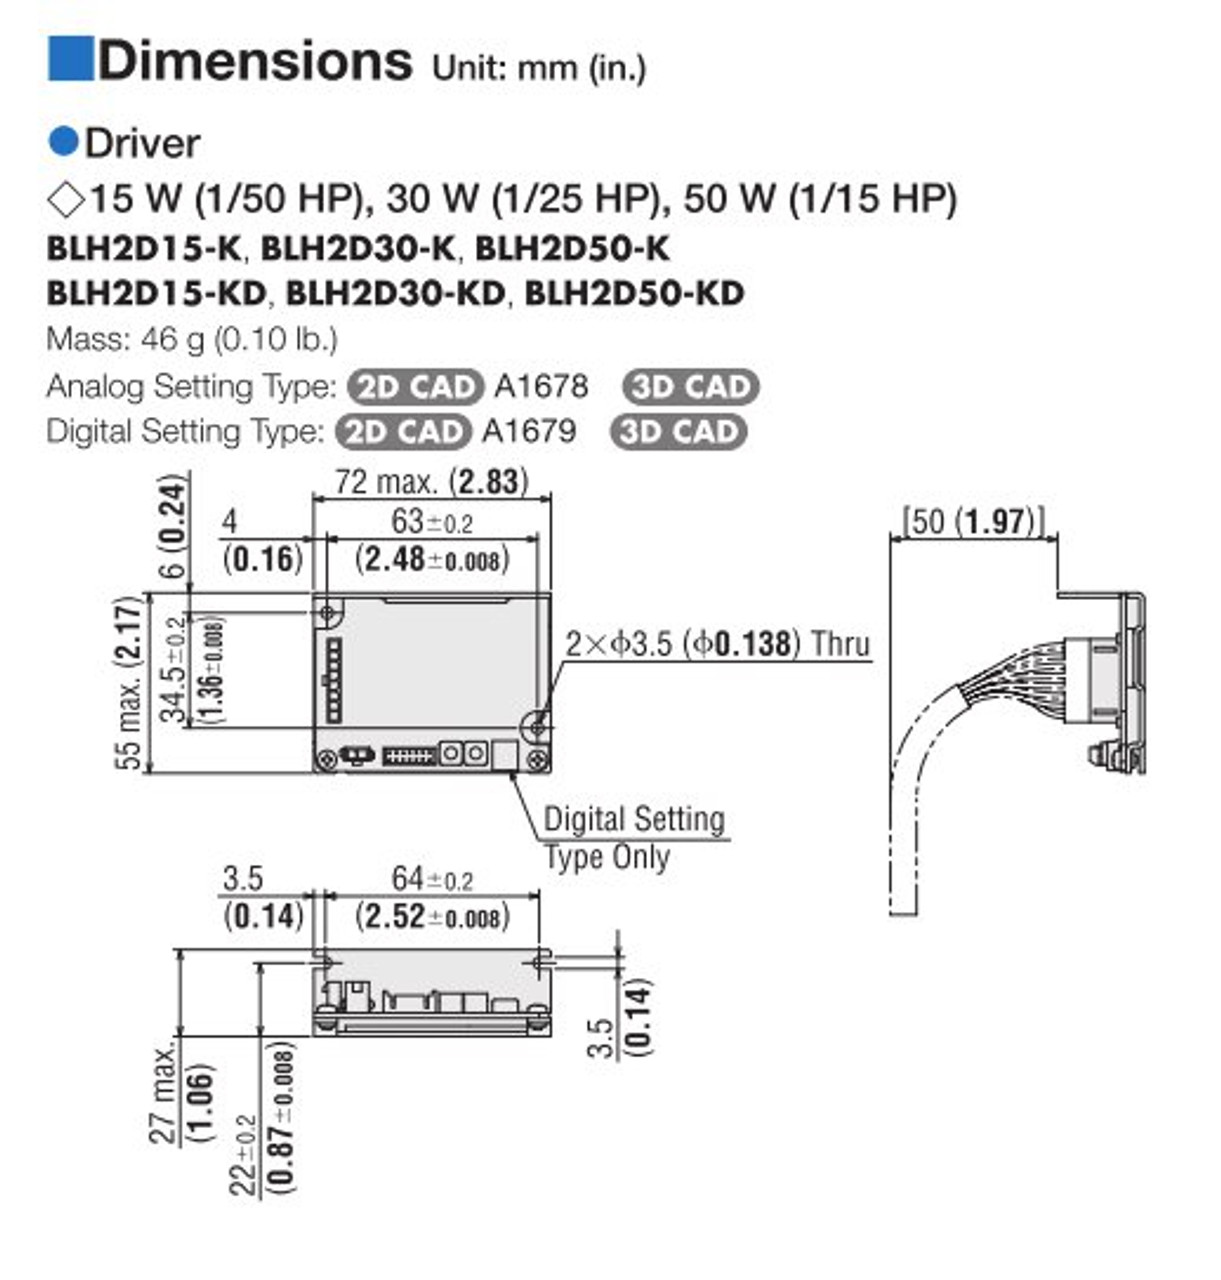 BLHM015K-20 / BLH2D15-K - Dimensions